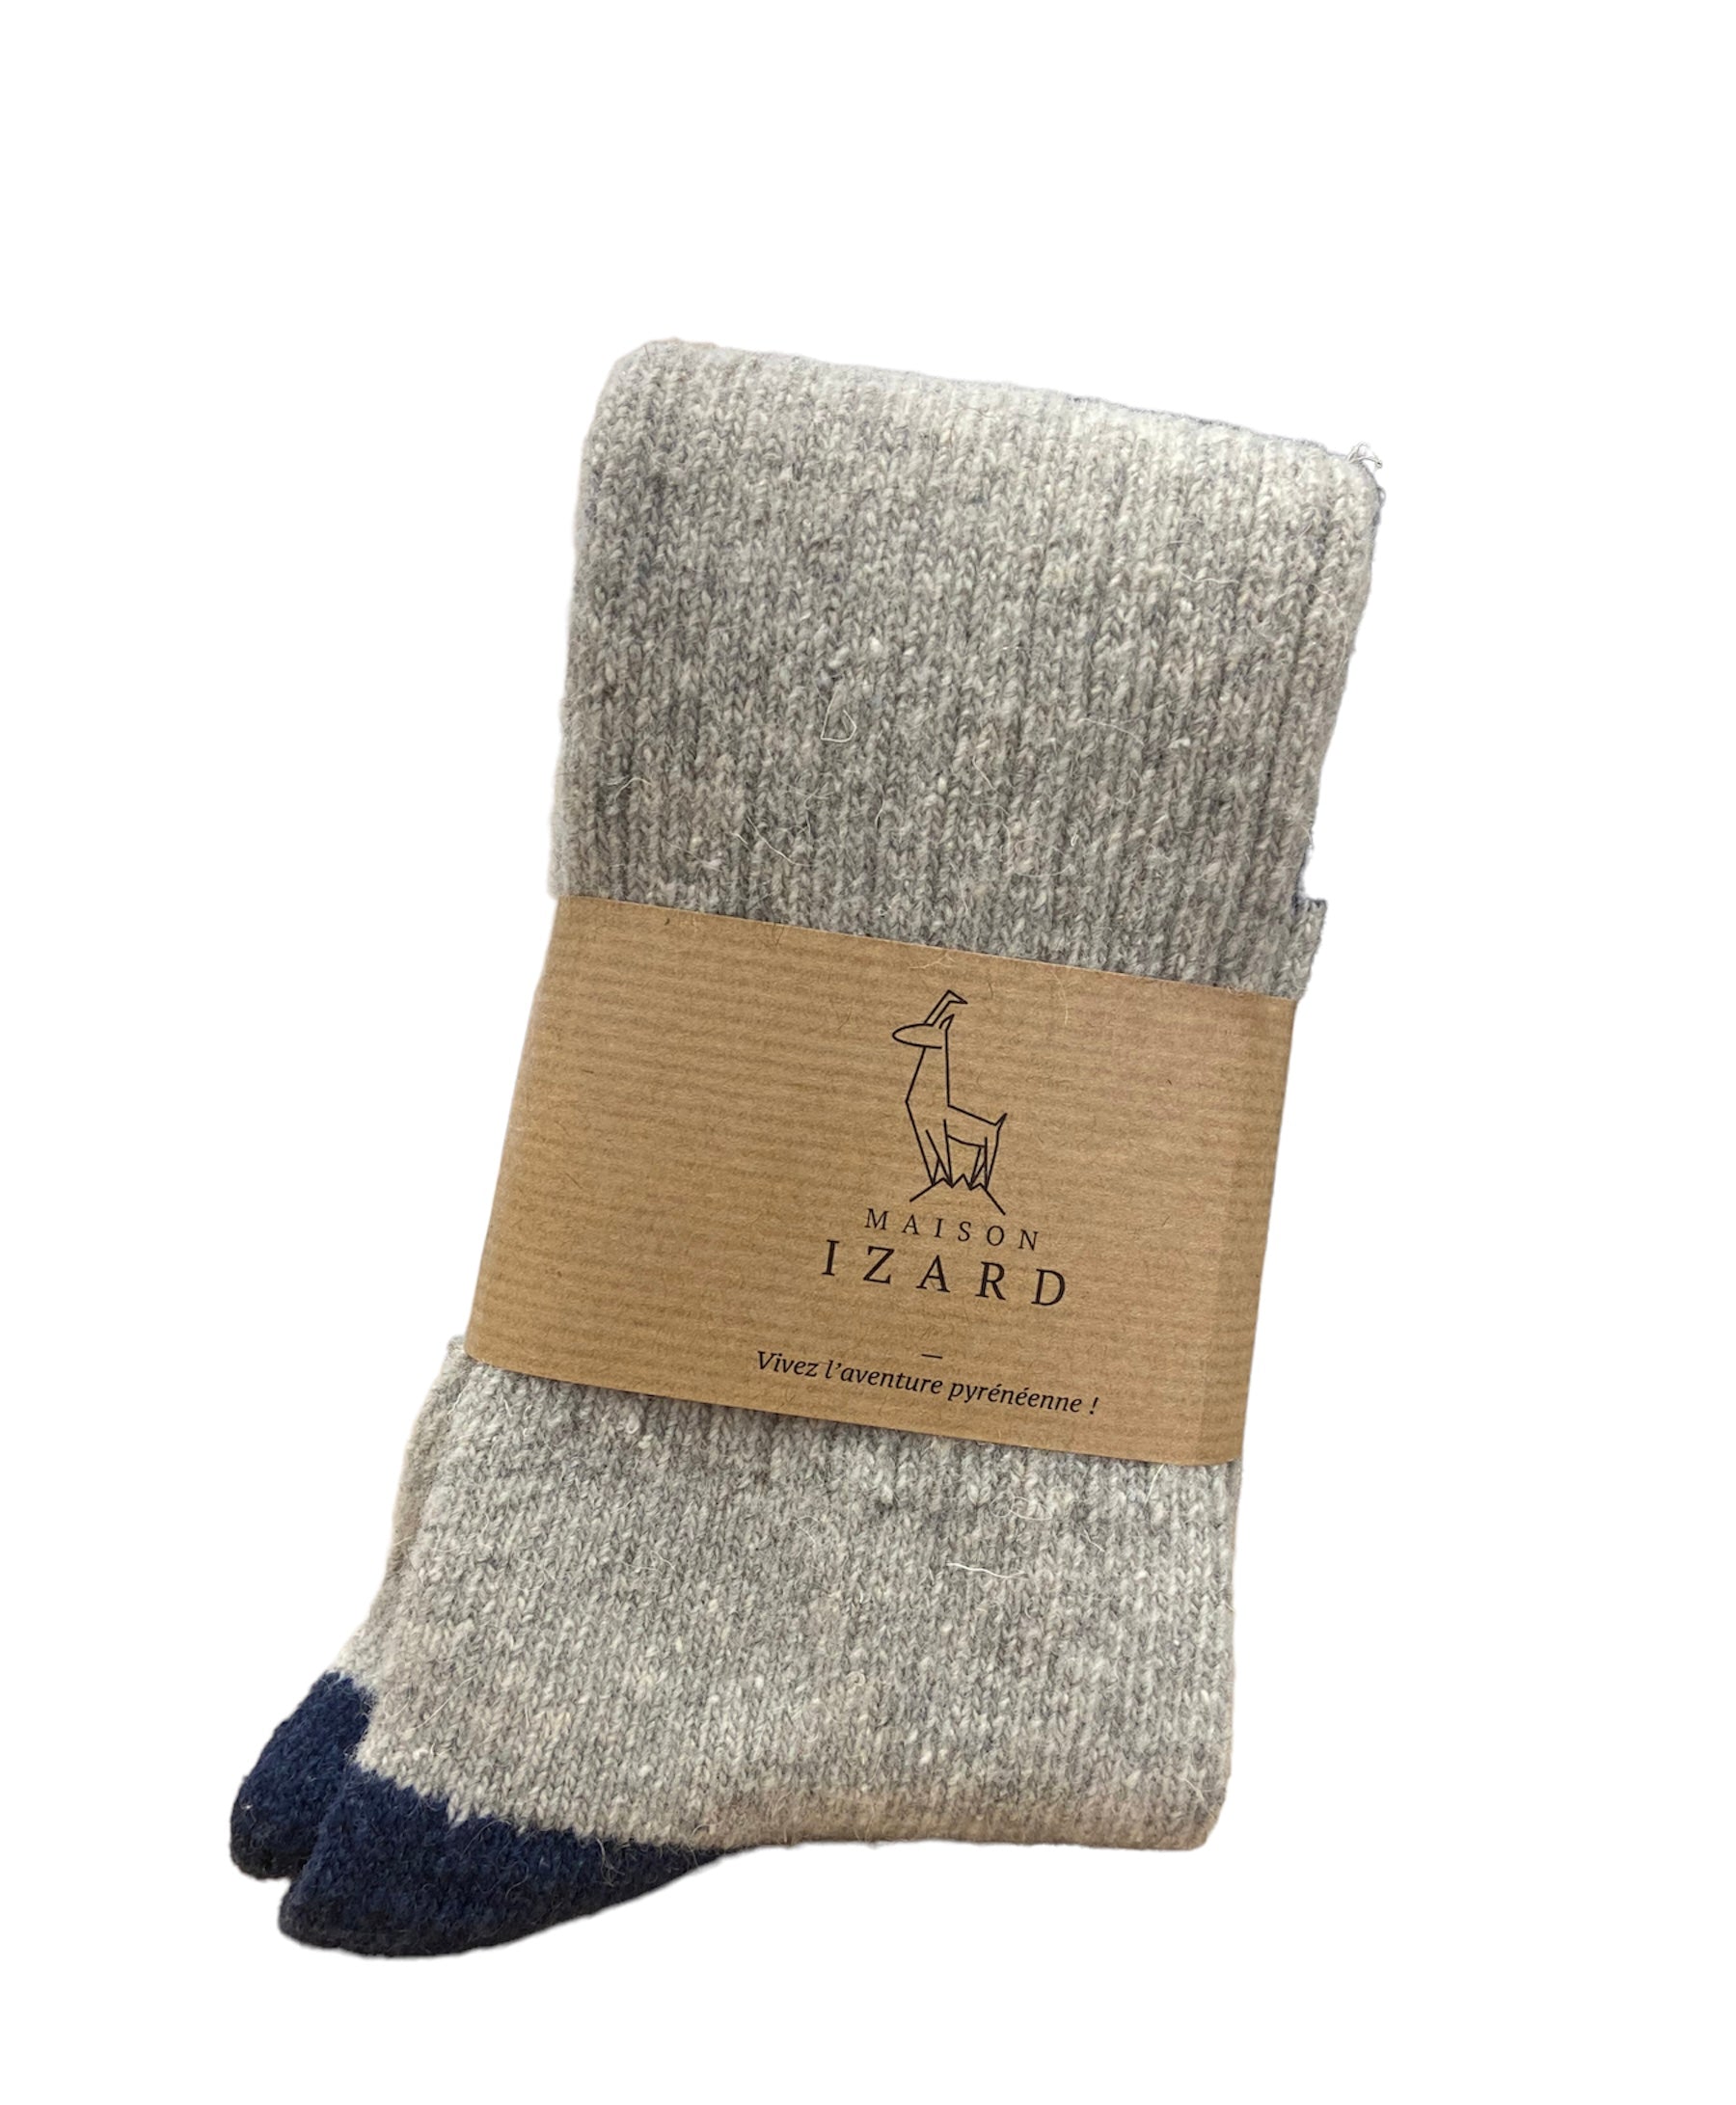 Thalweg Knee-High Socks Blue & Light Gray - French Wool 